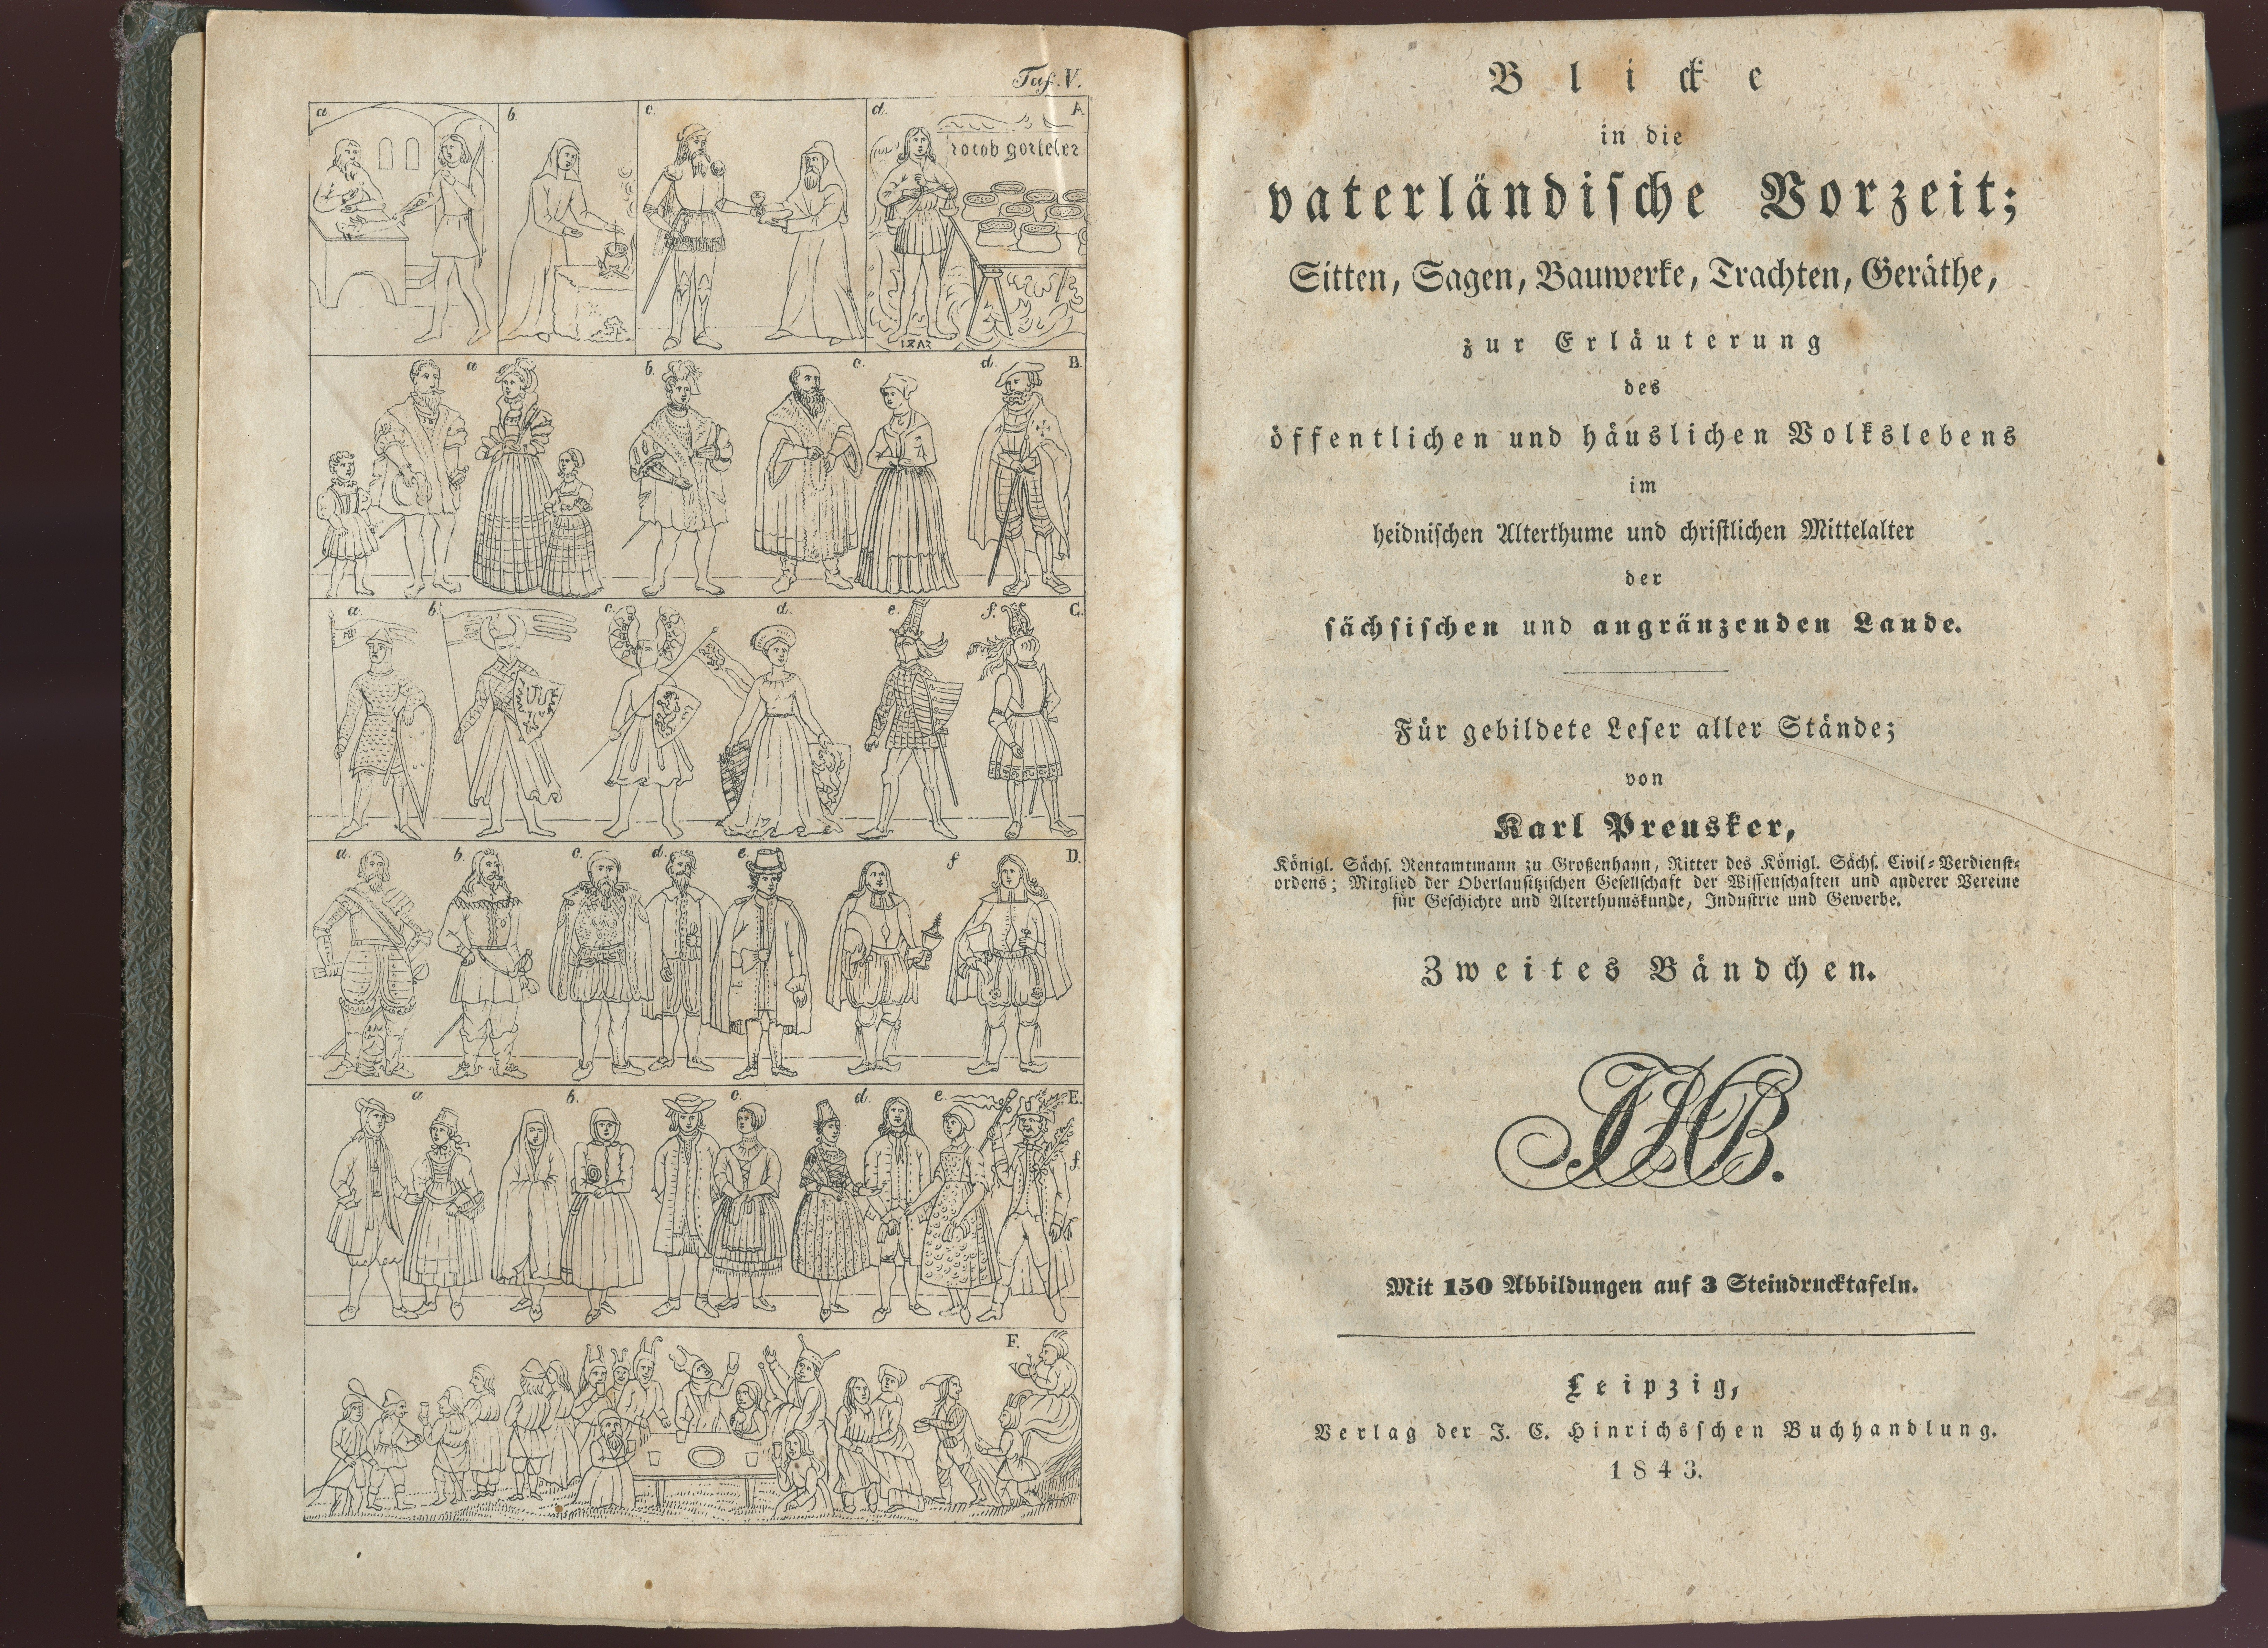 Preusker, Karl: Blicke in die vaterländische Vorzeit [...]. Bd. 2, 1843 (Museum Alte Lateinschule CC BY-NC-SA)